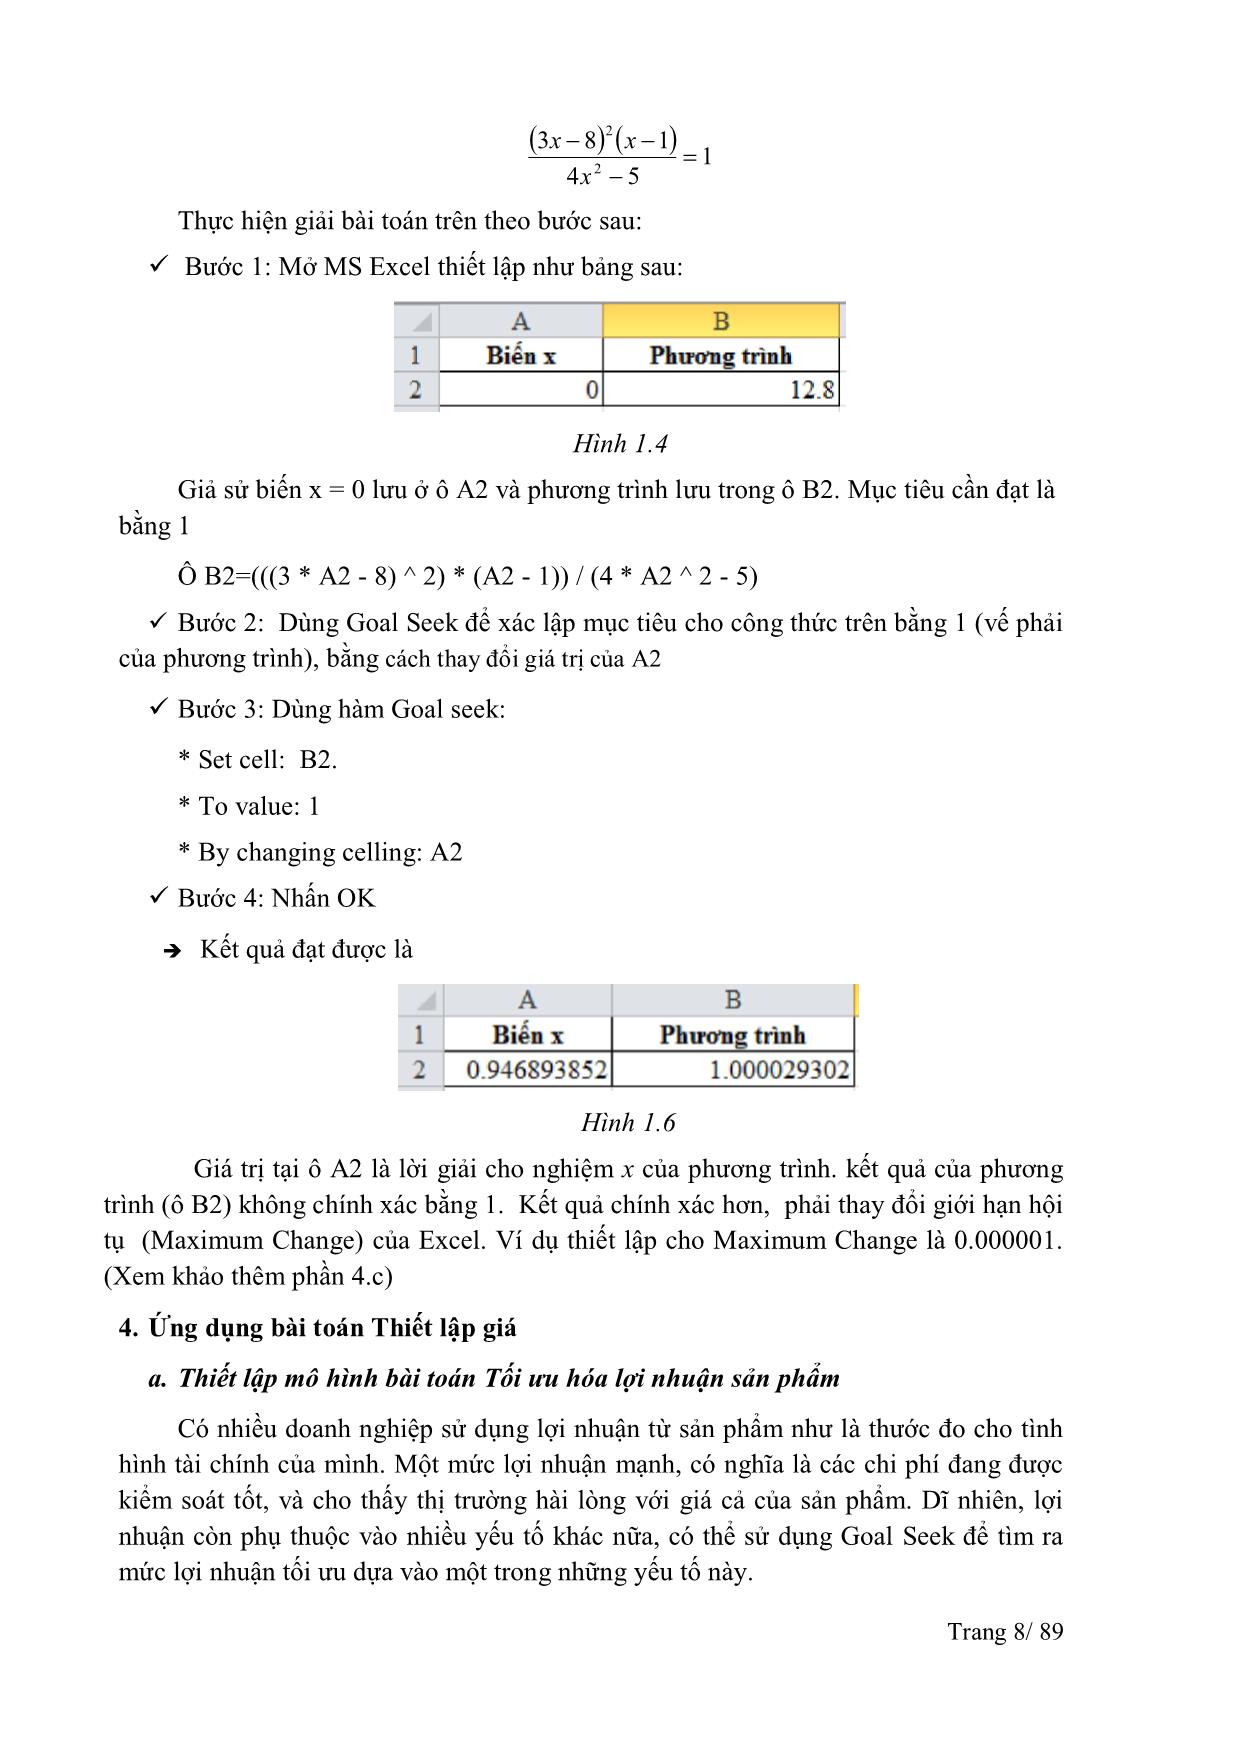 Giáo trình Excel nâng cao trang 8